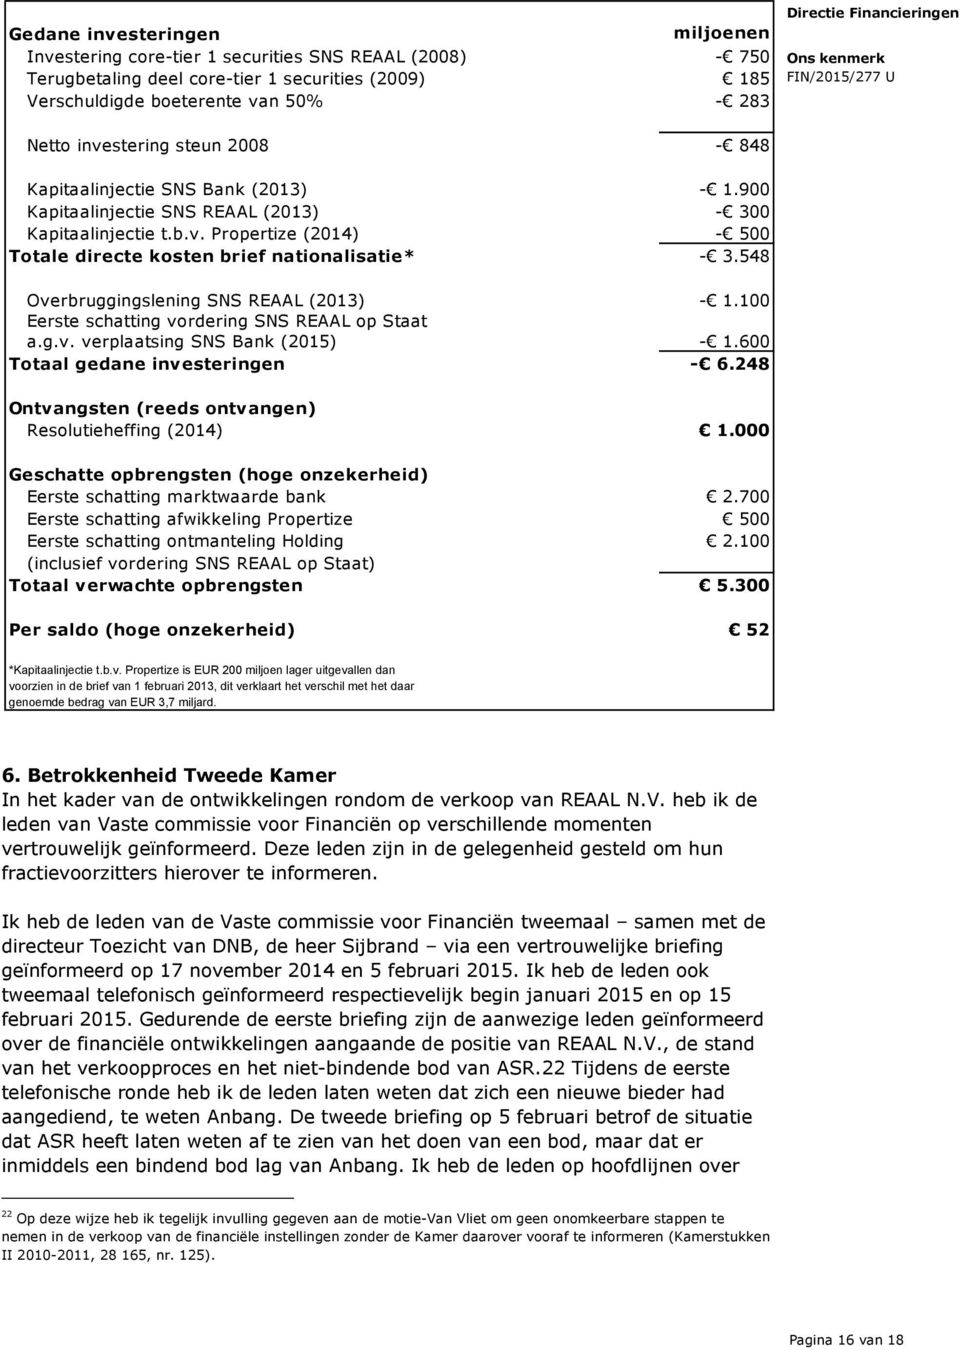 548 Overbruggingslening SNS REAAL (2013) - 1.100 Eerste schatting vordering SNS REAAL op Staat a.g.v. verplaatsing SNS Bank (2015) - 1.600 Totaal gedane investeringen - 6.